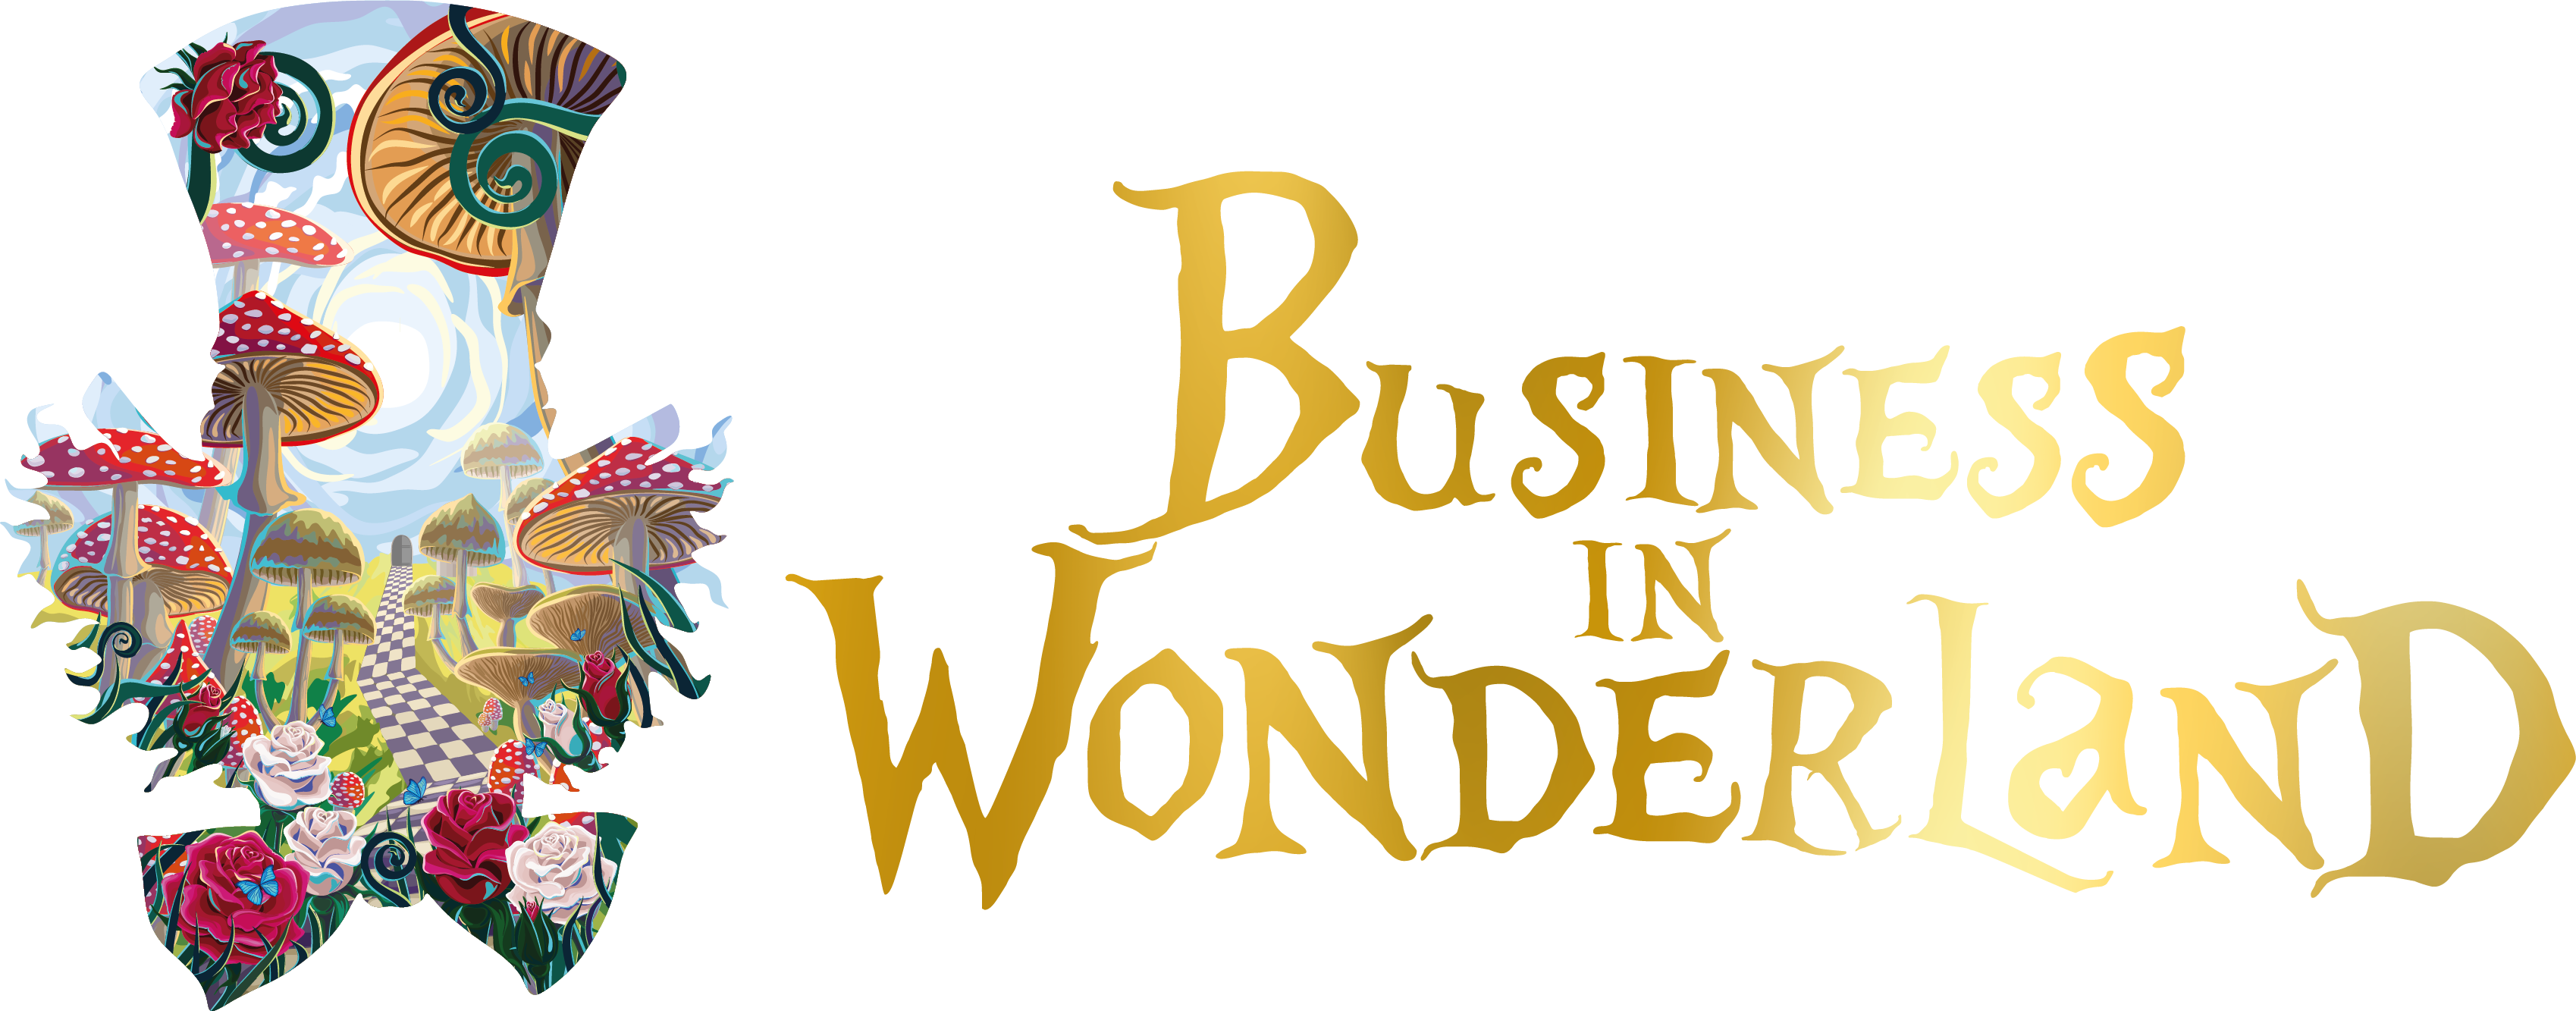 Business in Wonderland